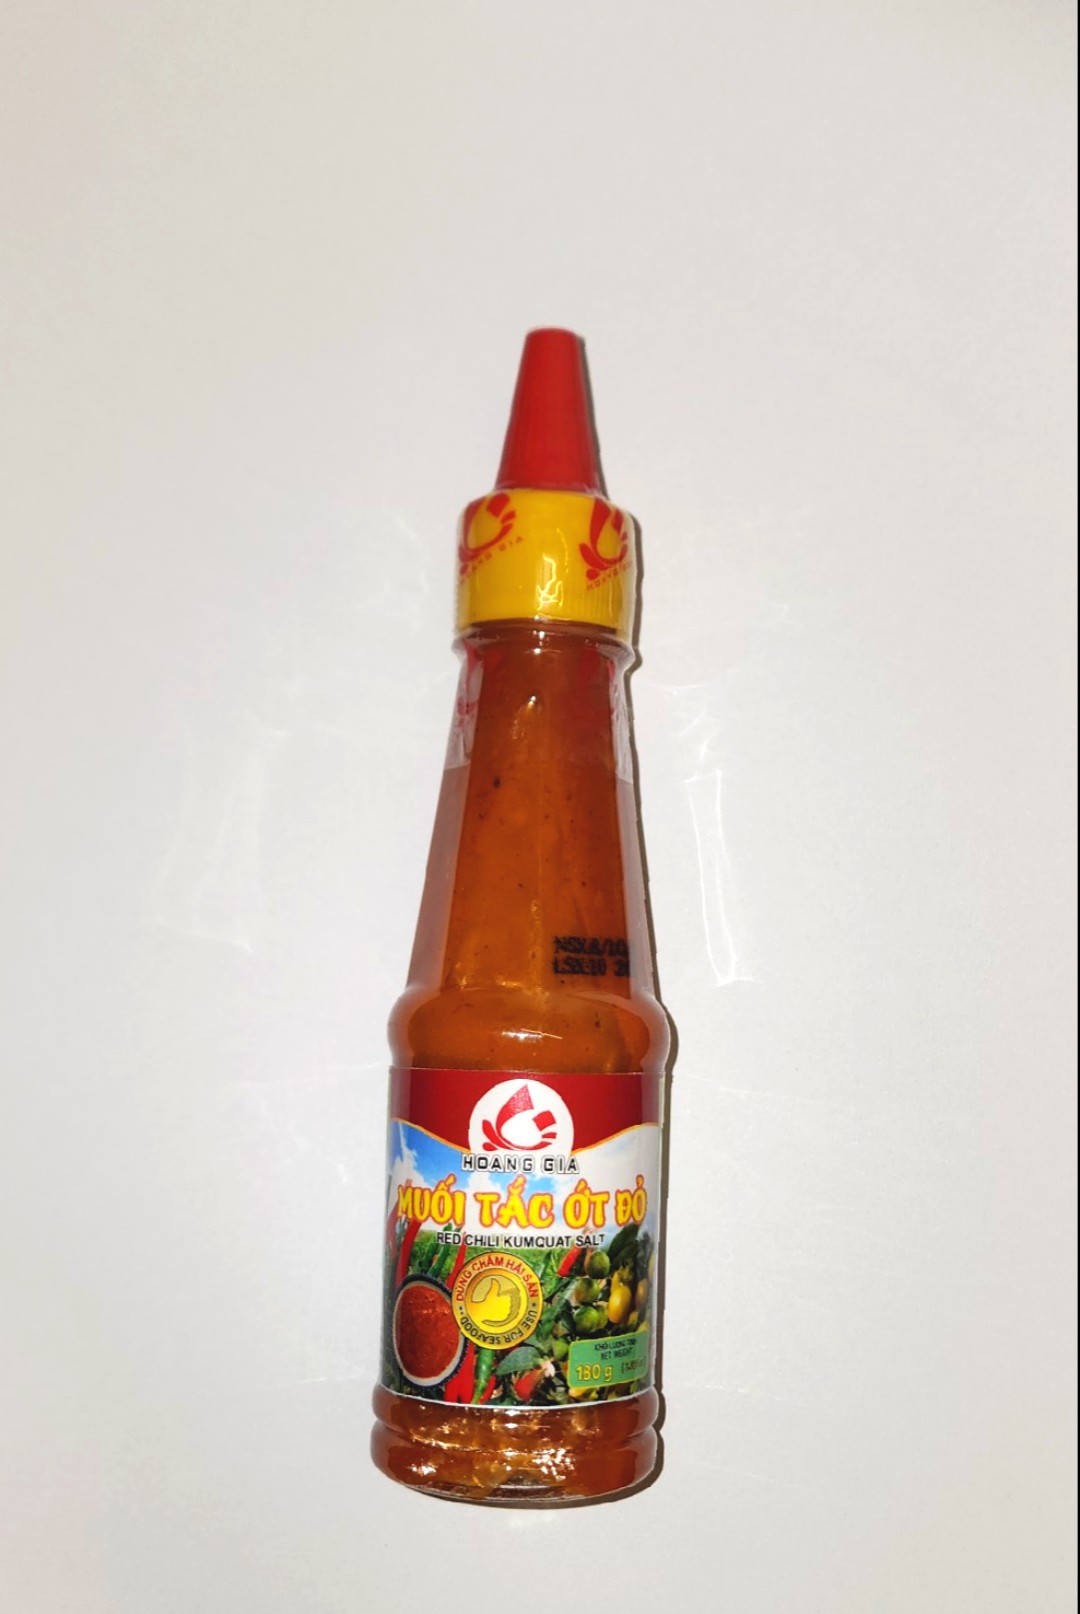 Đặc Sản Bình Thuận -Muối tắc ớt đỏ - 130g- Ocop 3 Sao